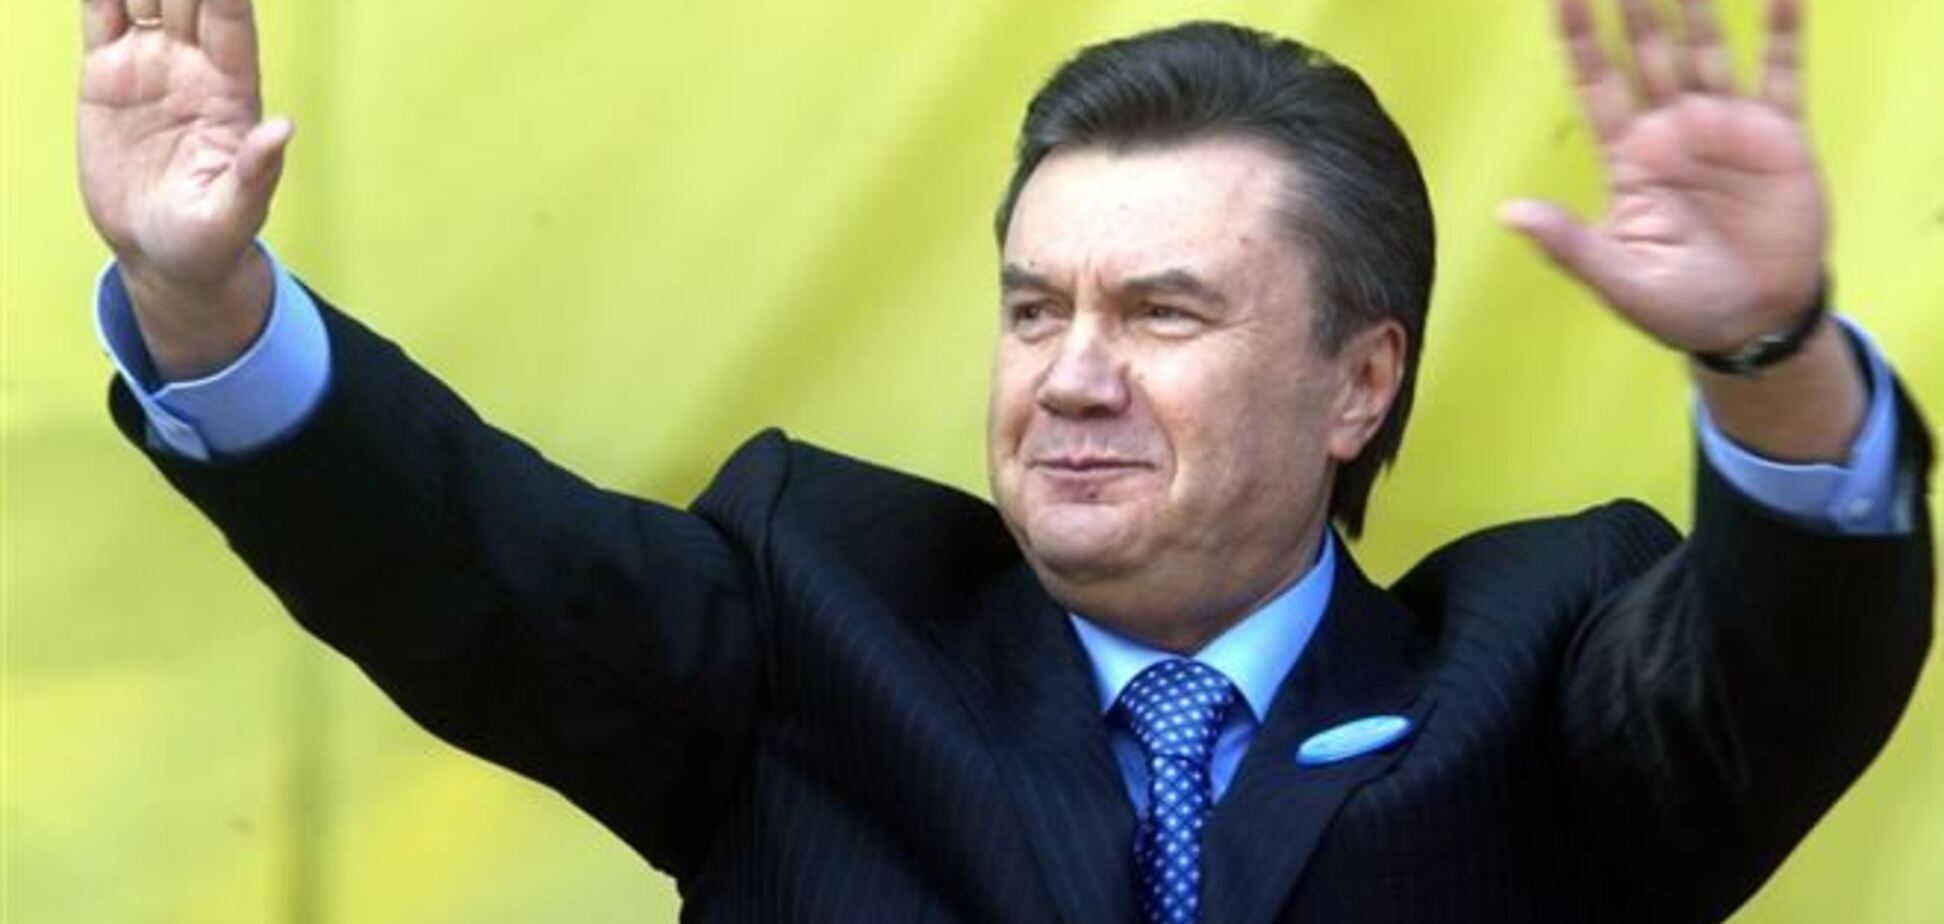 Аксьонов написав у Twitter, що Янукович вже в Донецьку